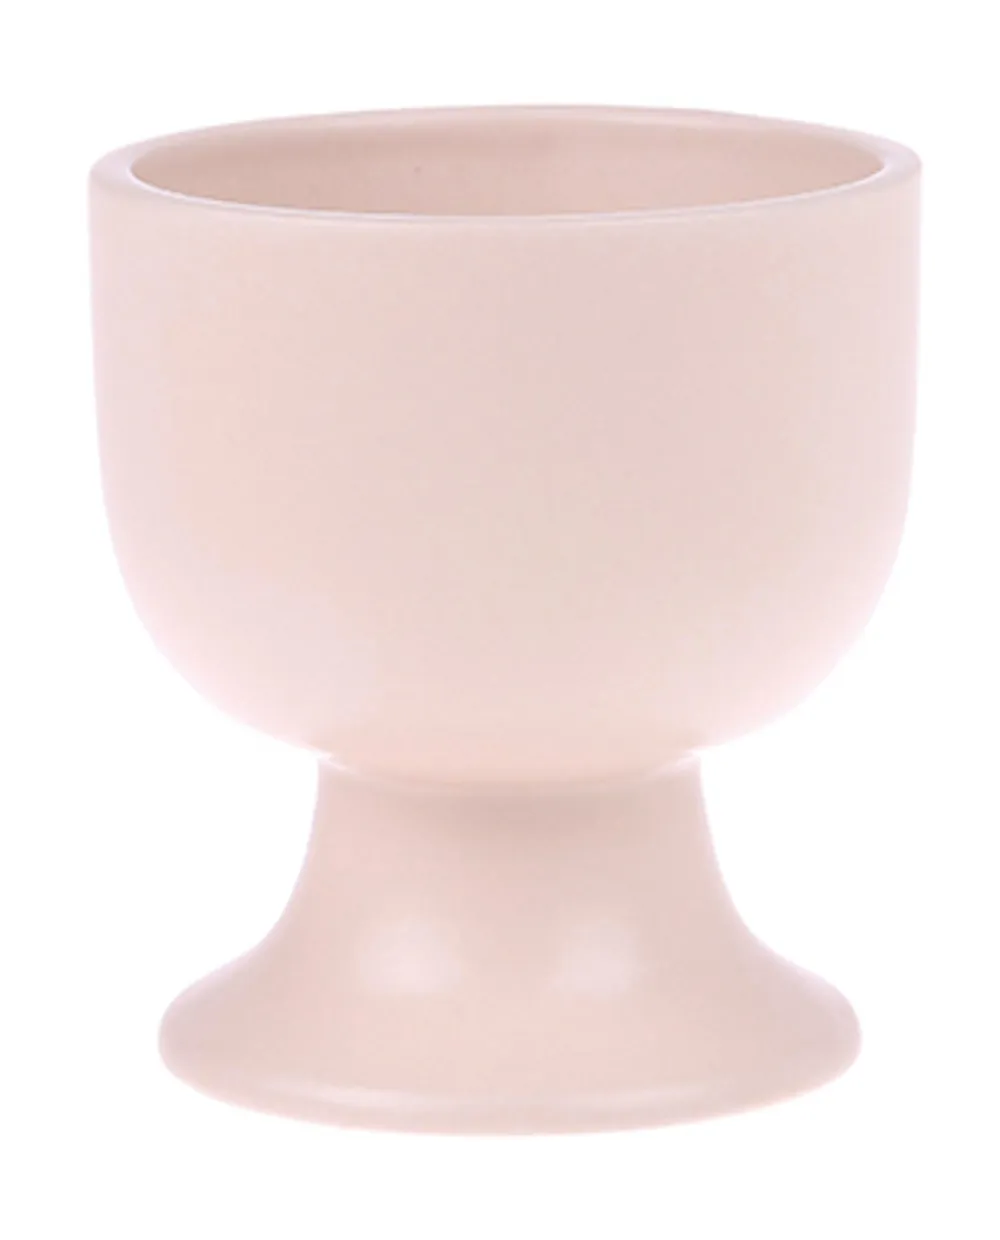 Bold & basic ceramics: mug on base matt skin